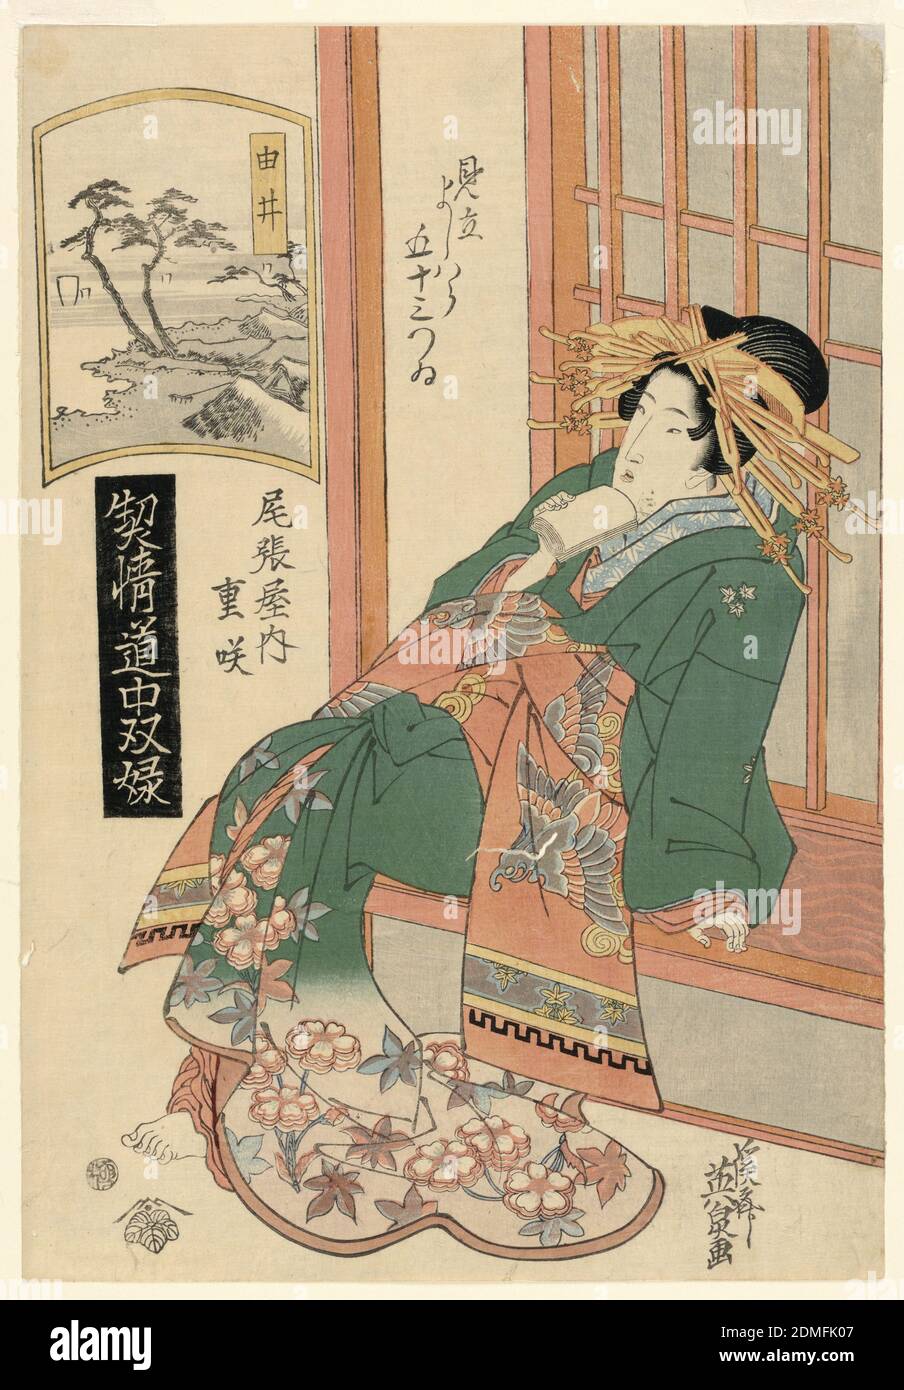 Yui, aus der Serie, 'The Highest Ranking Geisha's Journey', Keisei Eisen, japanisch, 1790 – 1848, Holzblock-Druck in farbiger Tinte auf Papier, die Frau sitzt auf einem Shoji-Bildschirm, auf einem Arm ruhend, sitzt in Kontemplation. Der Rahmen des Gebäudes hebt die gleiche orange Farbe in ihrem Kimono. Es gibt ein Fenster im Druck, das eine natürliche Landschaft zeigt. Andere japanische Zeichen in Kanji und Hiragana geschrieben sind um den Druck verteilt., Japan, ca. 1830, Theater, Druck Stockfoto